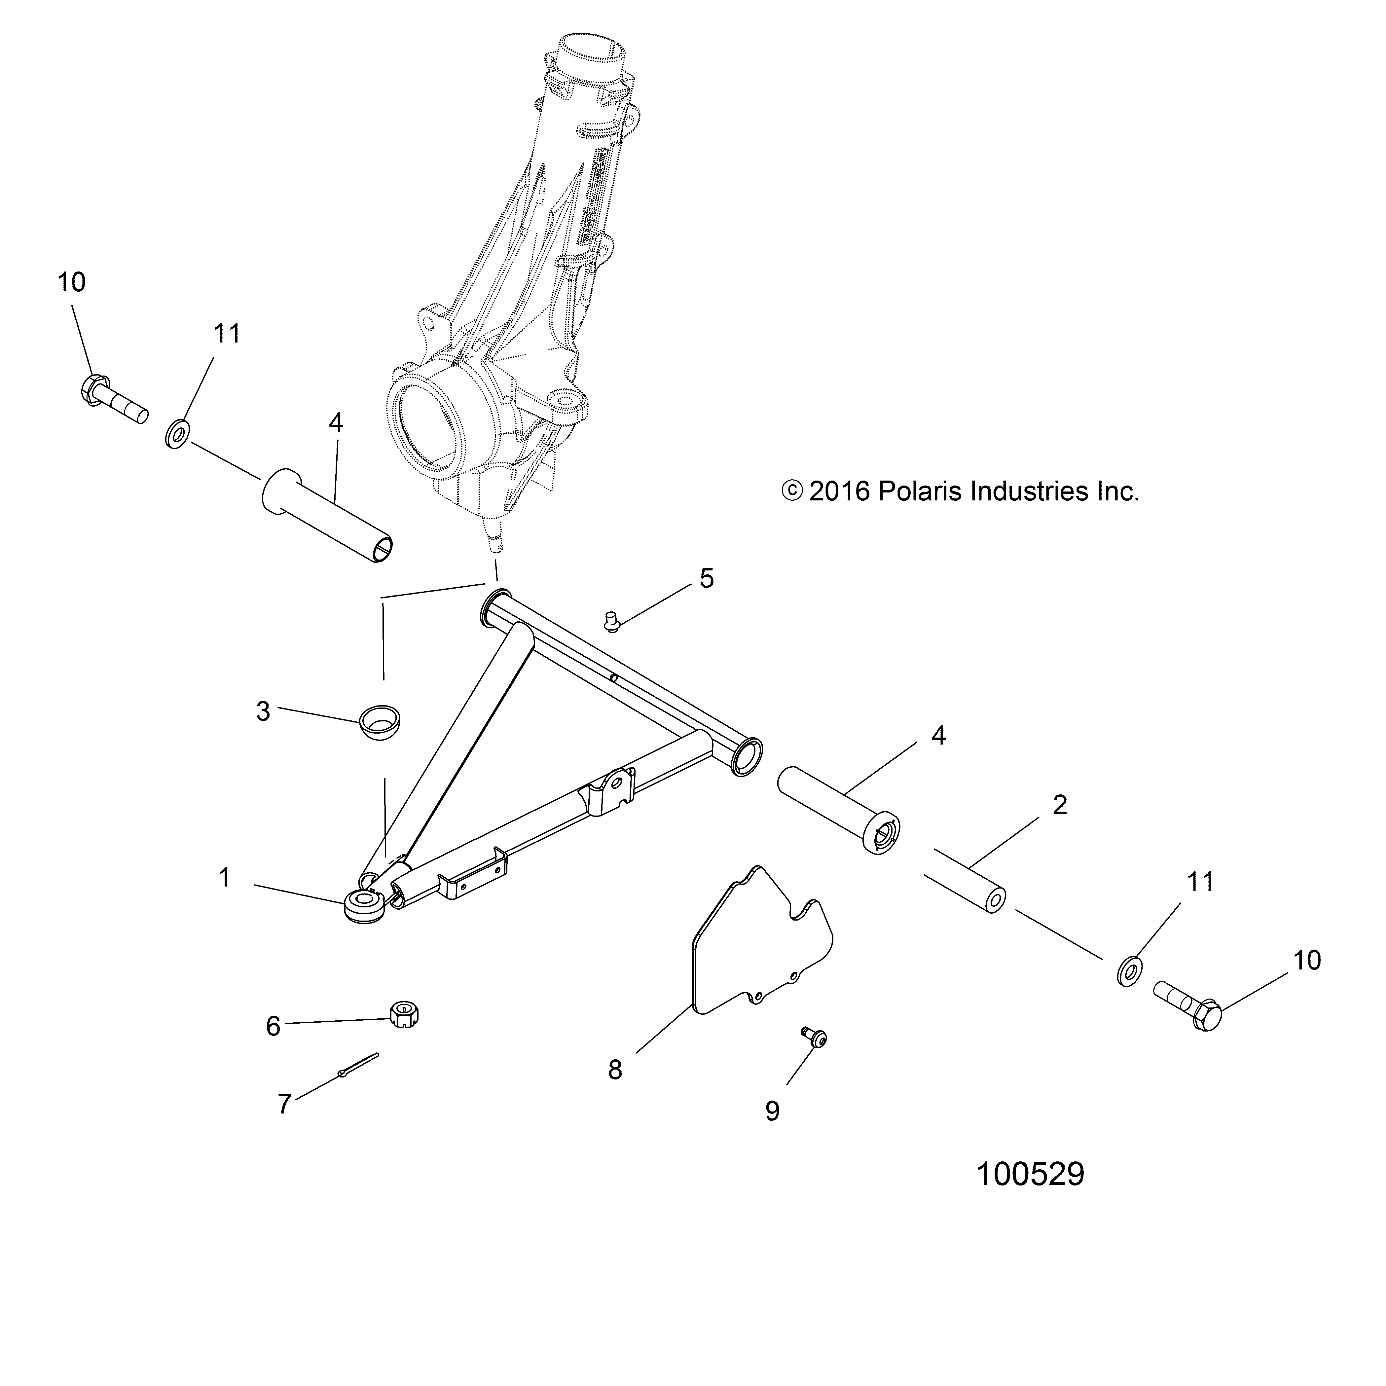 Foto diagrama Polaris que contem a peça 5438641-070